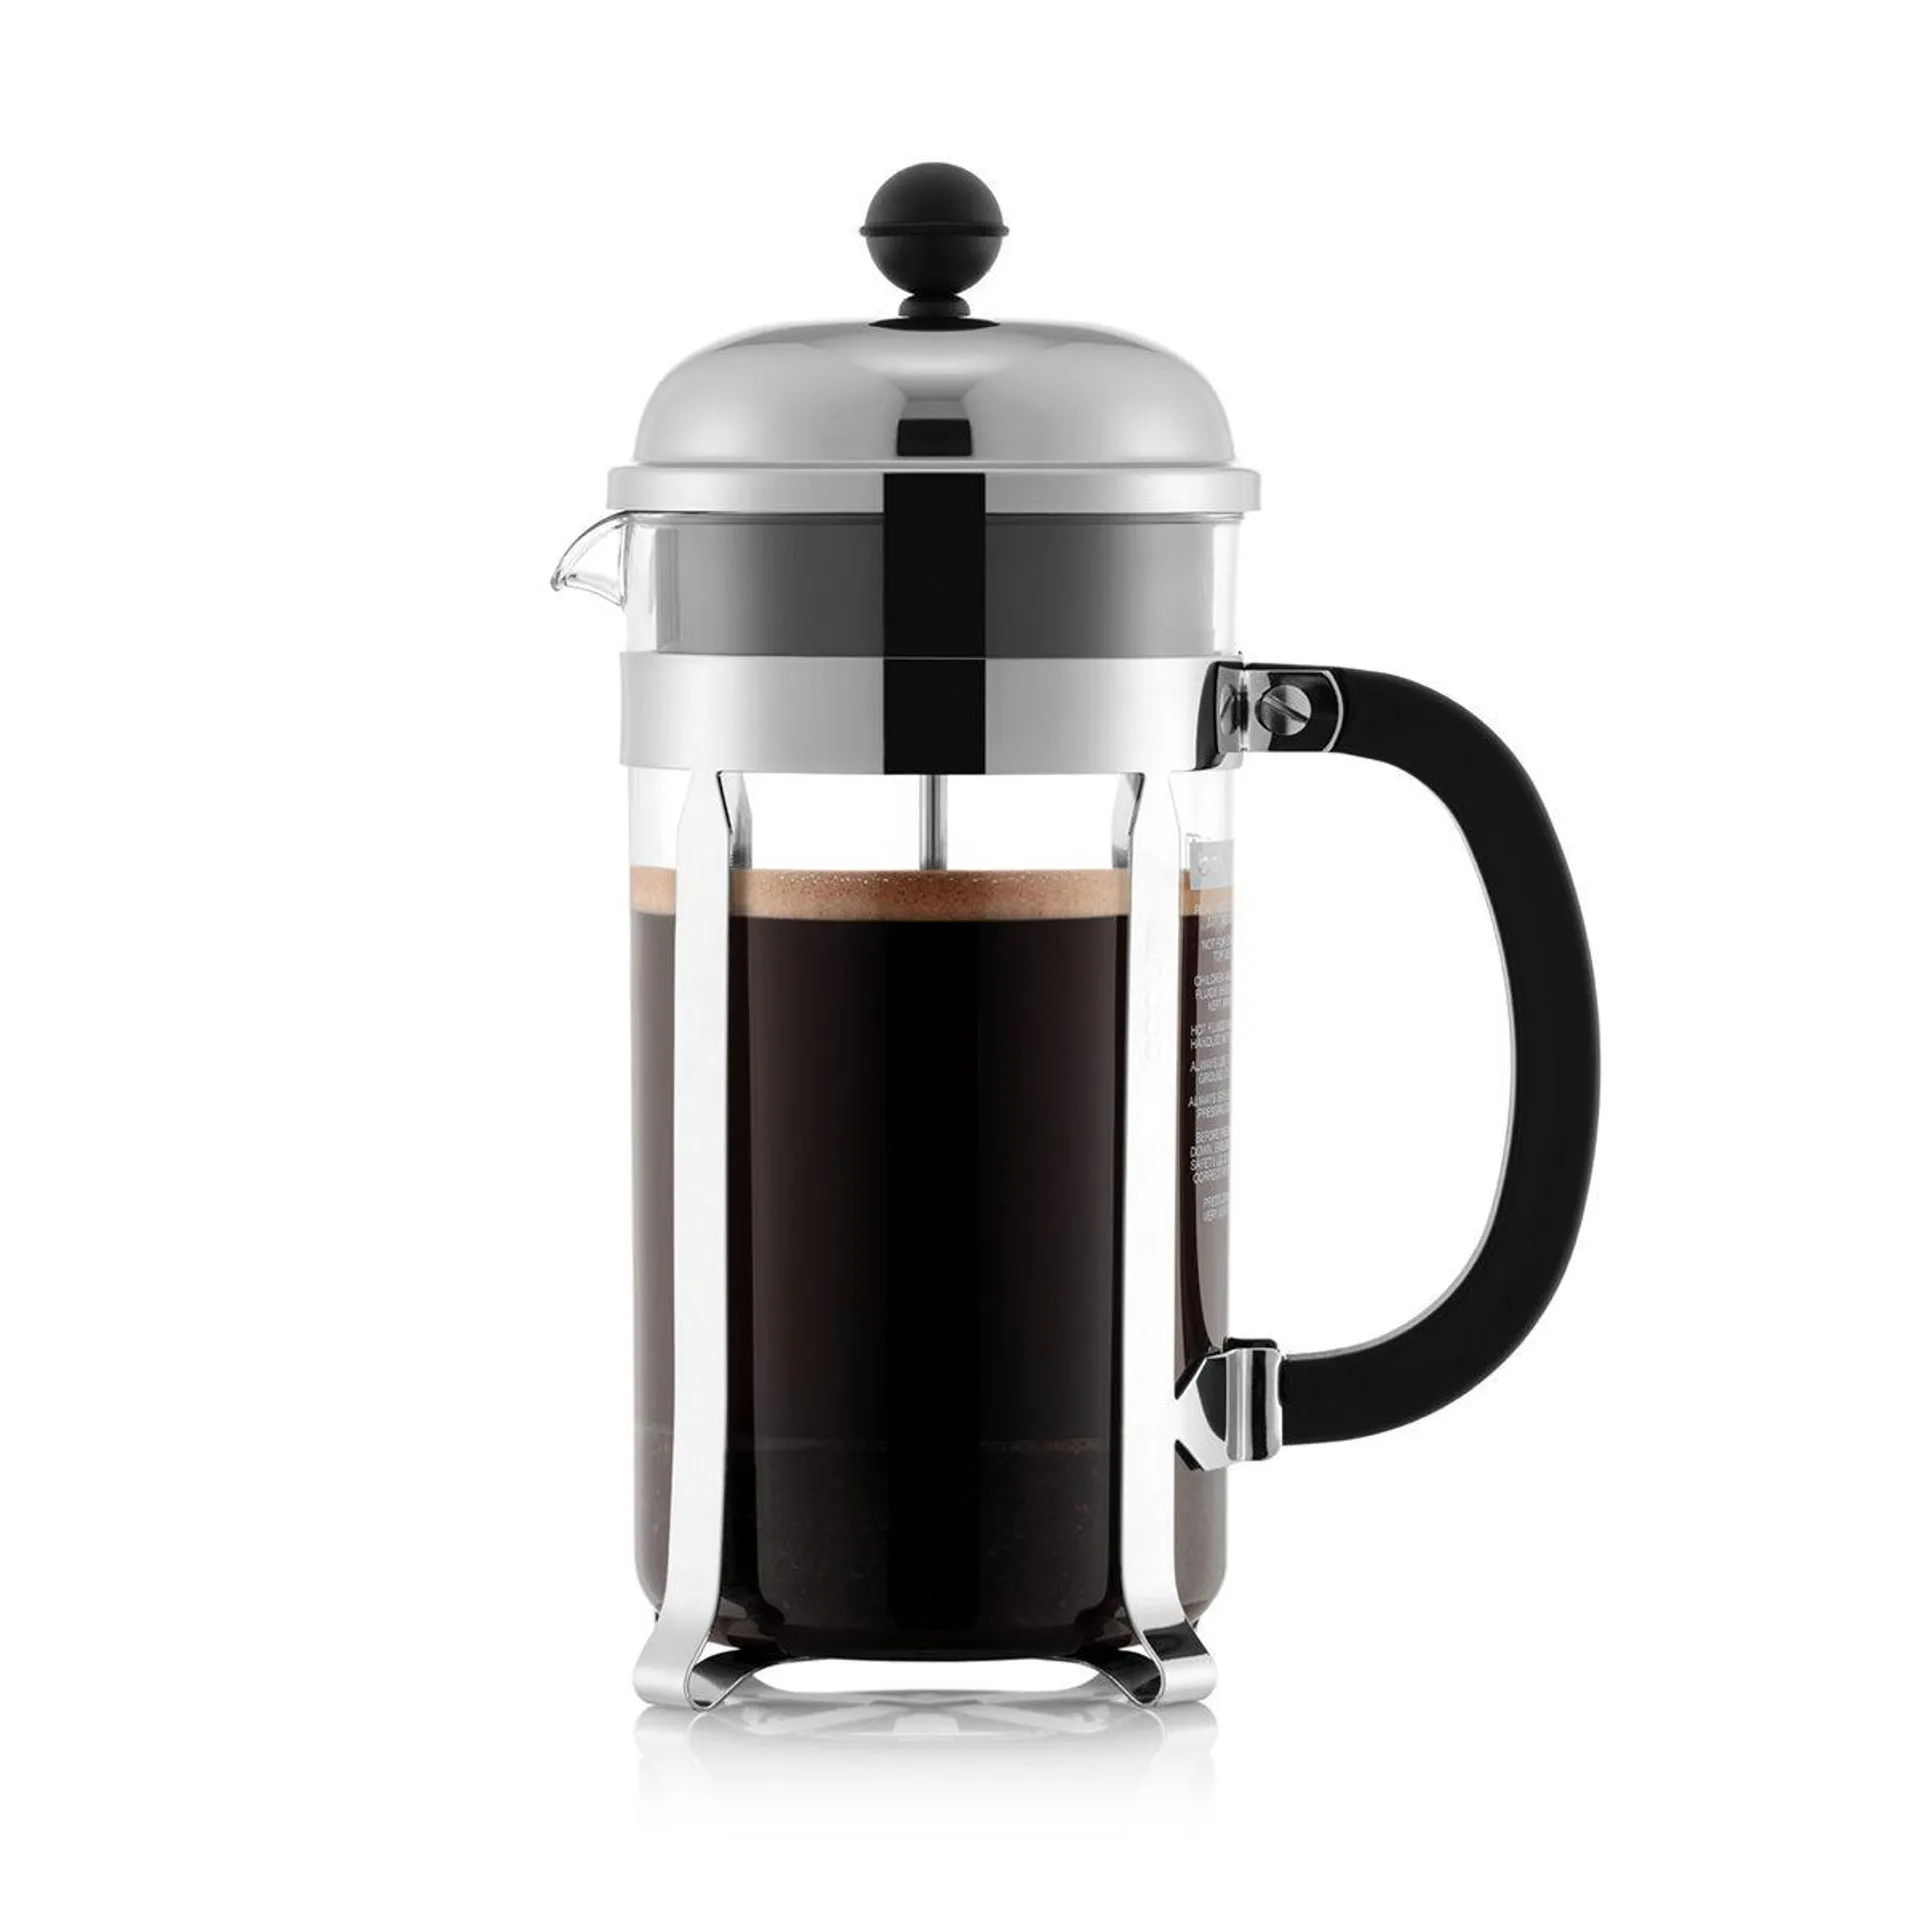 Coffee maker, 8 cup, 1.0 l, 34 oz